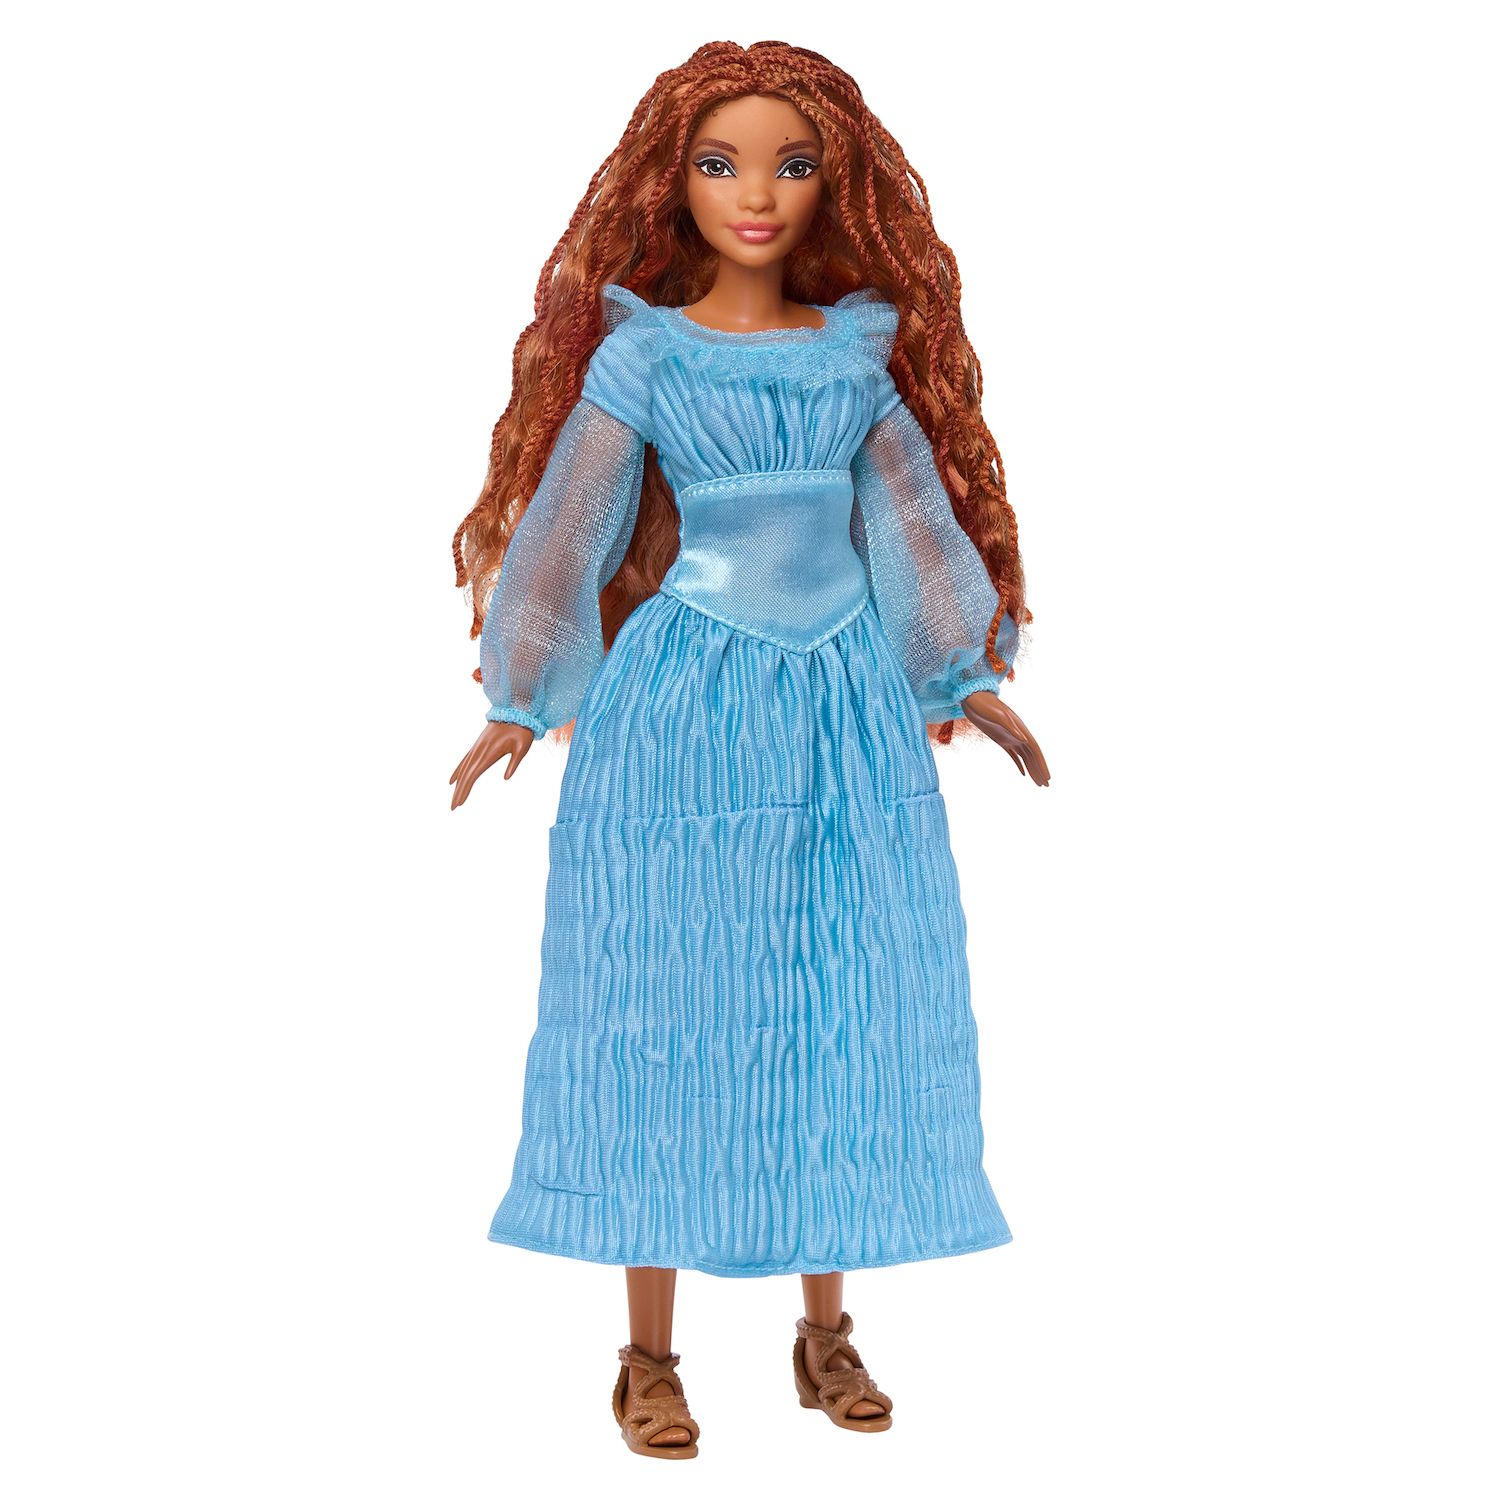 Модная кукла Диснея «Русалочка Ариэль на суше» от Mattel Mattel прическа принцессы диснея ариэль mattel